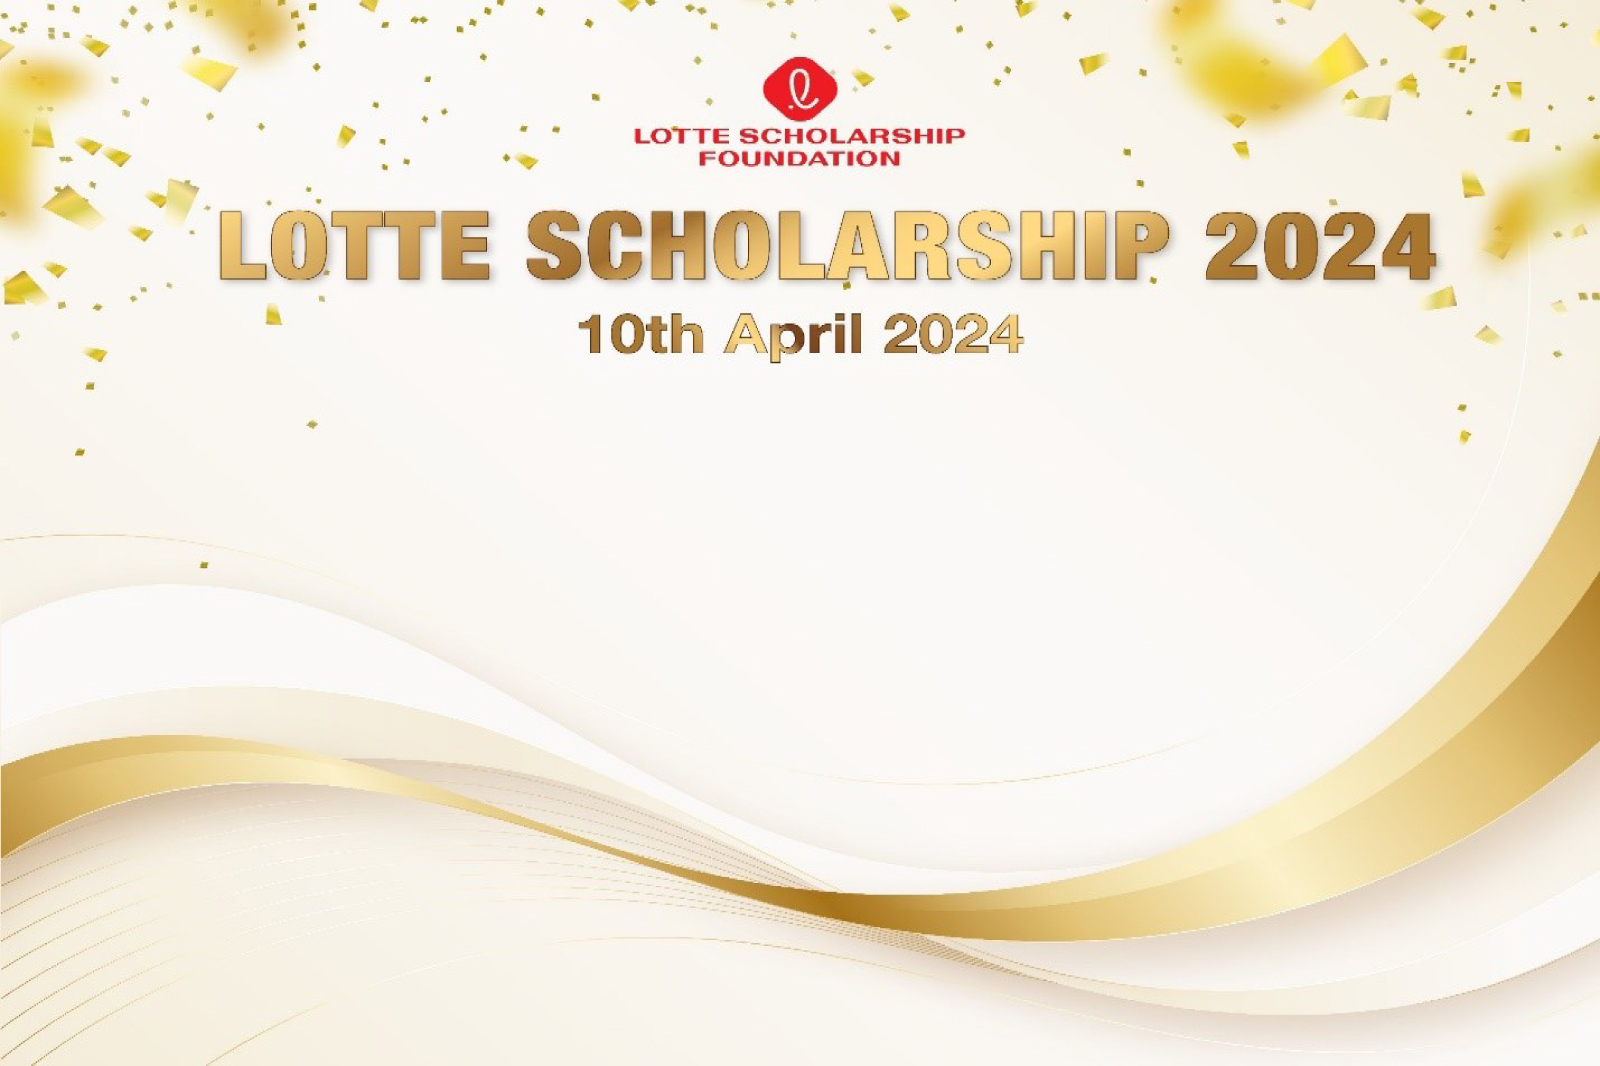 Chúc mừng 3 sinh viên xuất sắc nhận Học bổng Lotte, Hàn Quốc học kỳ 2, năm học 2023 - 2024